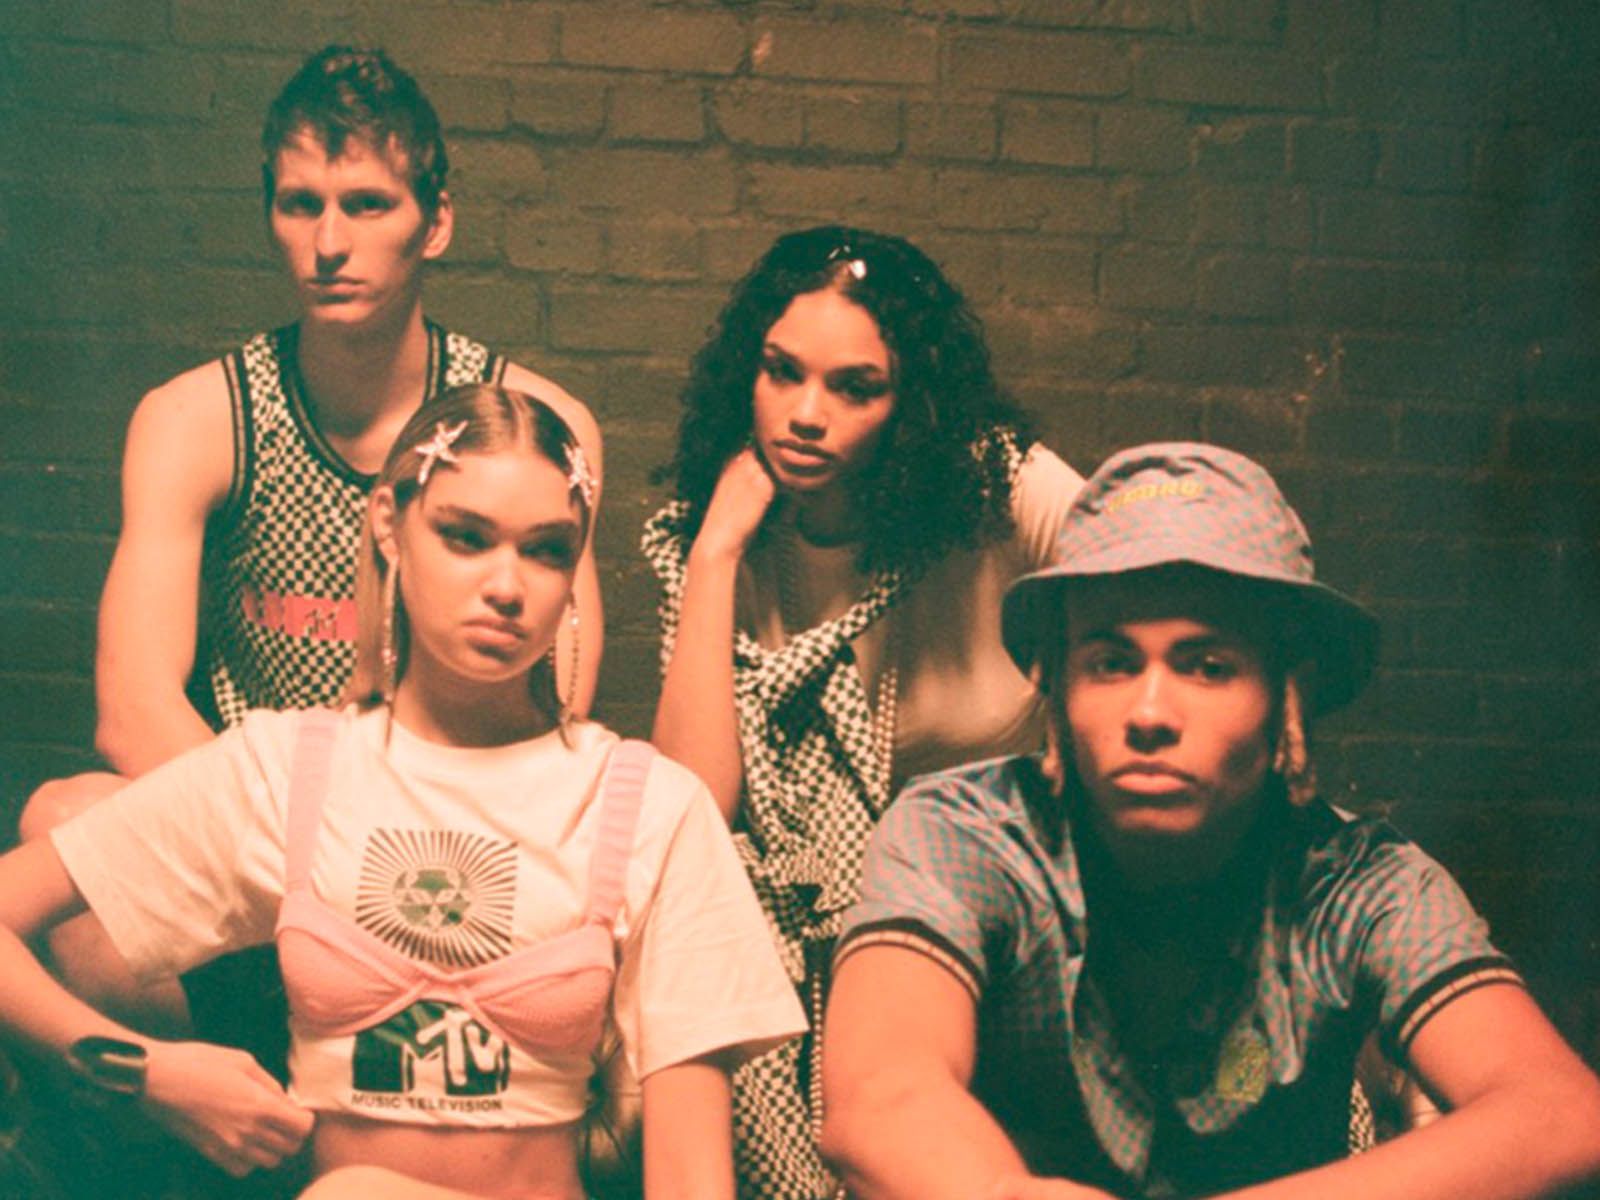 MTV y Umbro celebran el surgimiento del Acid House con esta colección